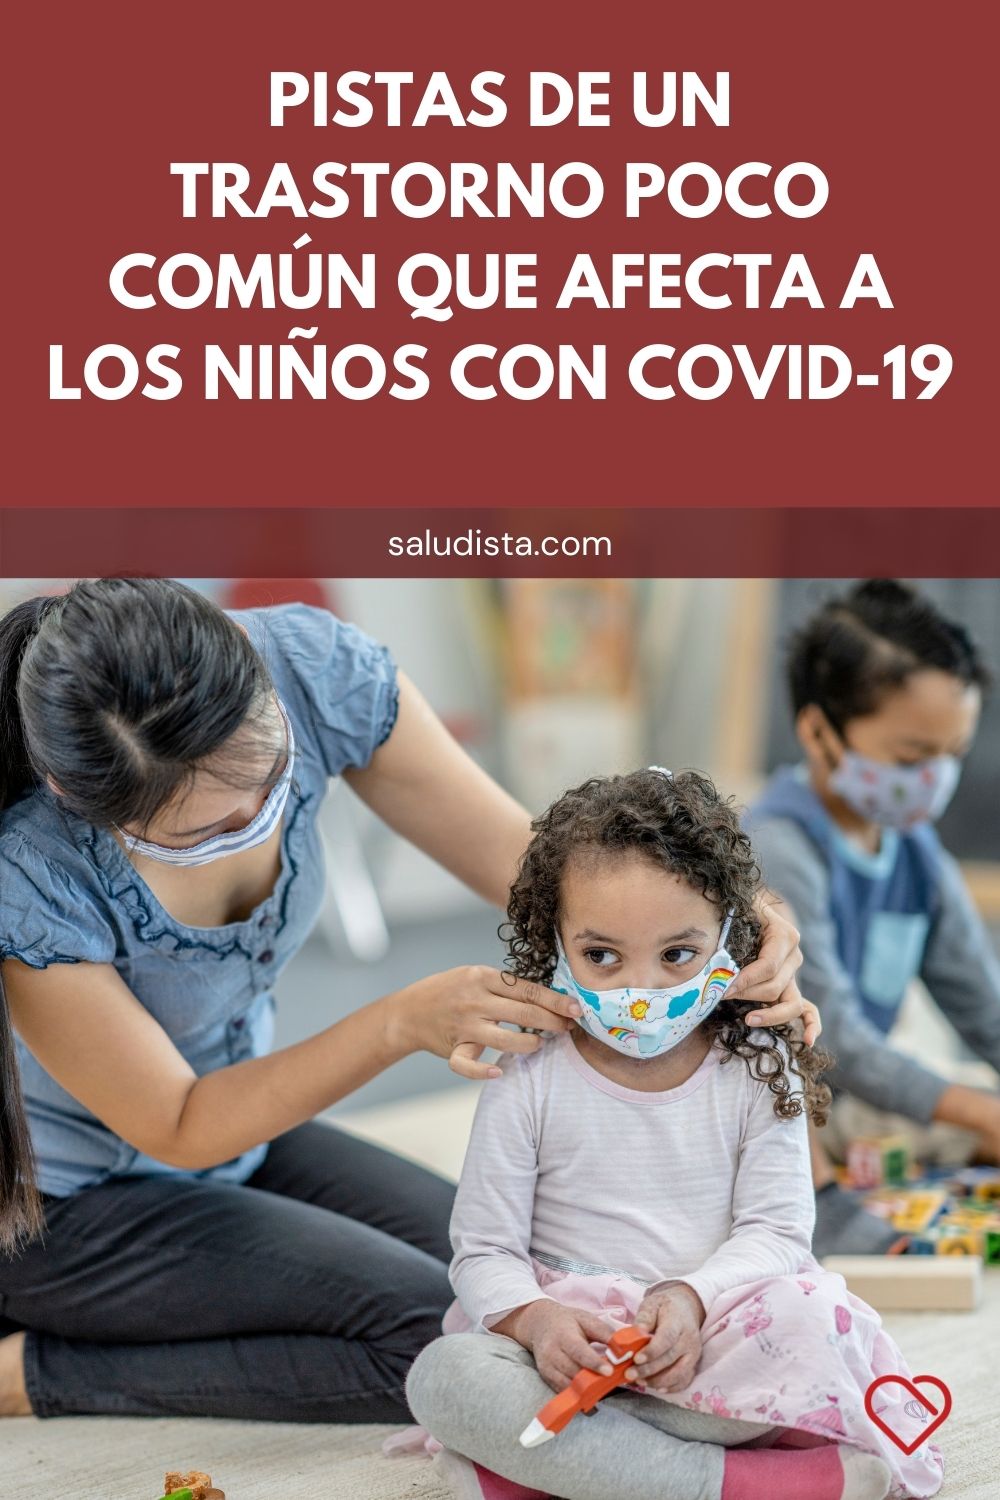 Pistas de un trastorno poco común que afecta a los niños con COVID-19